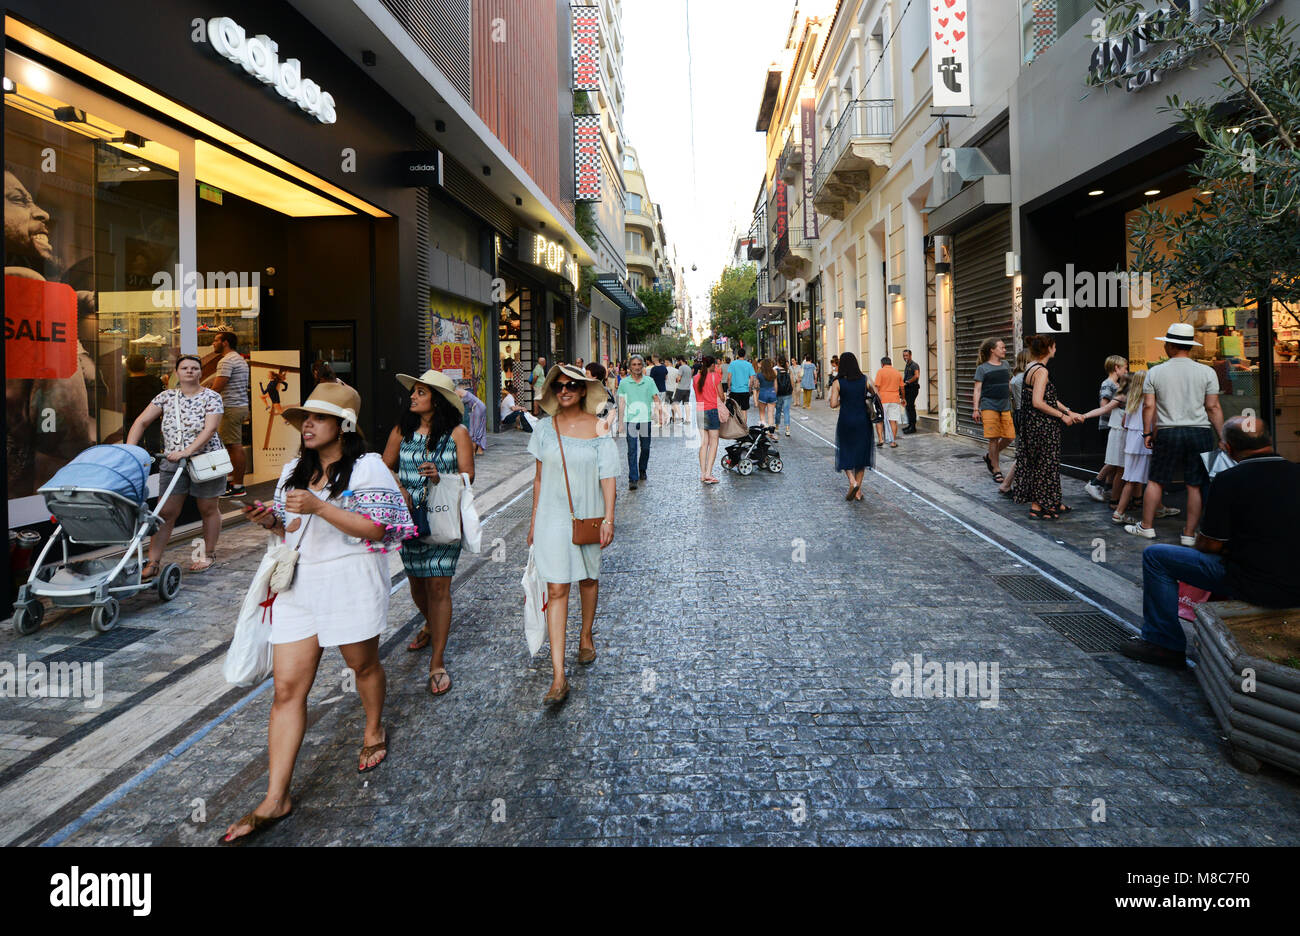 Ermou strada pedonale è sempre occupato con acquirenti e turisti. Foto Stock